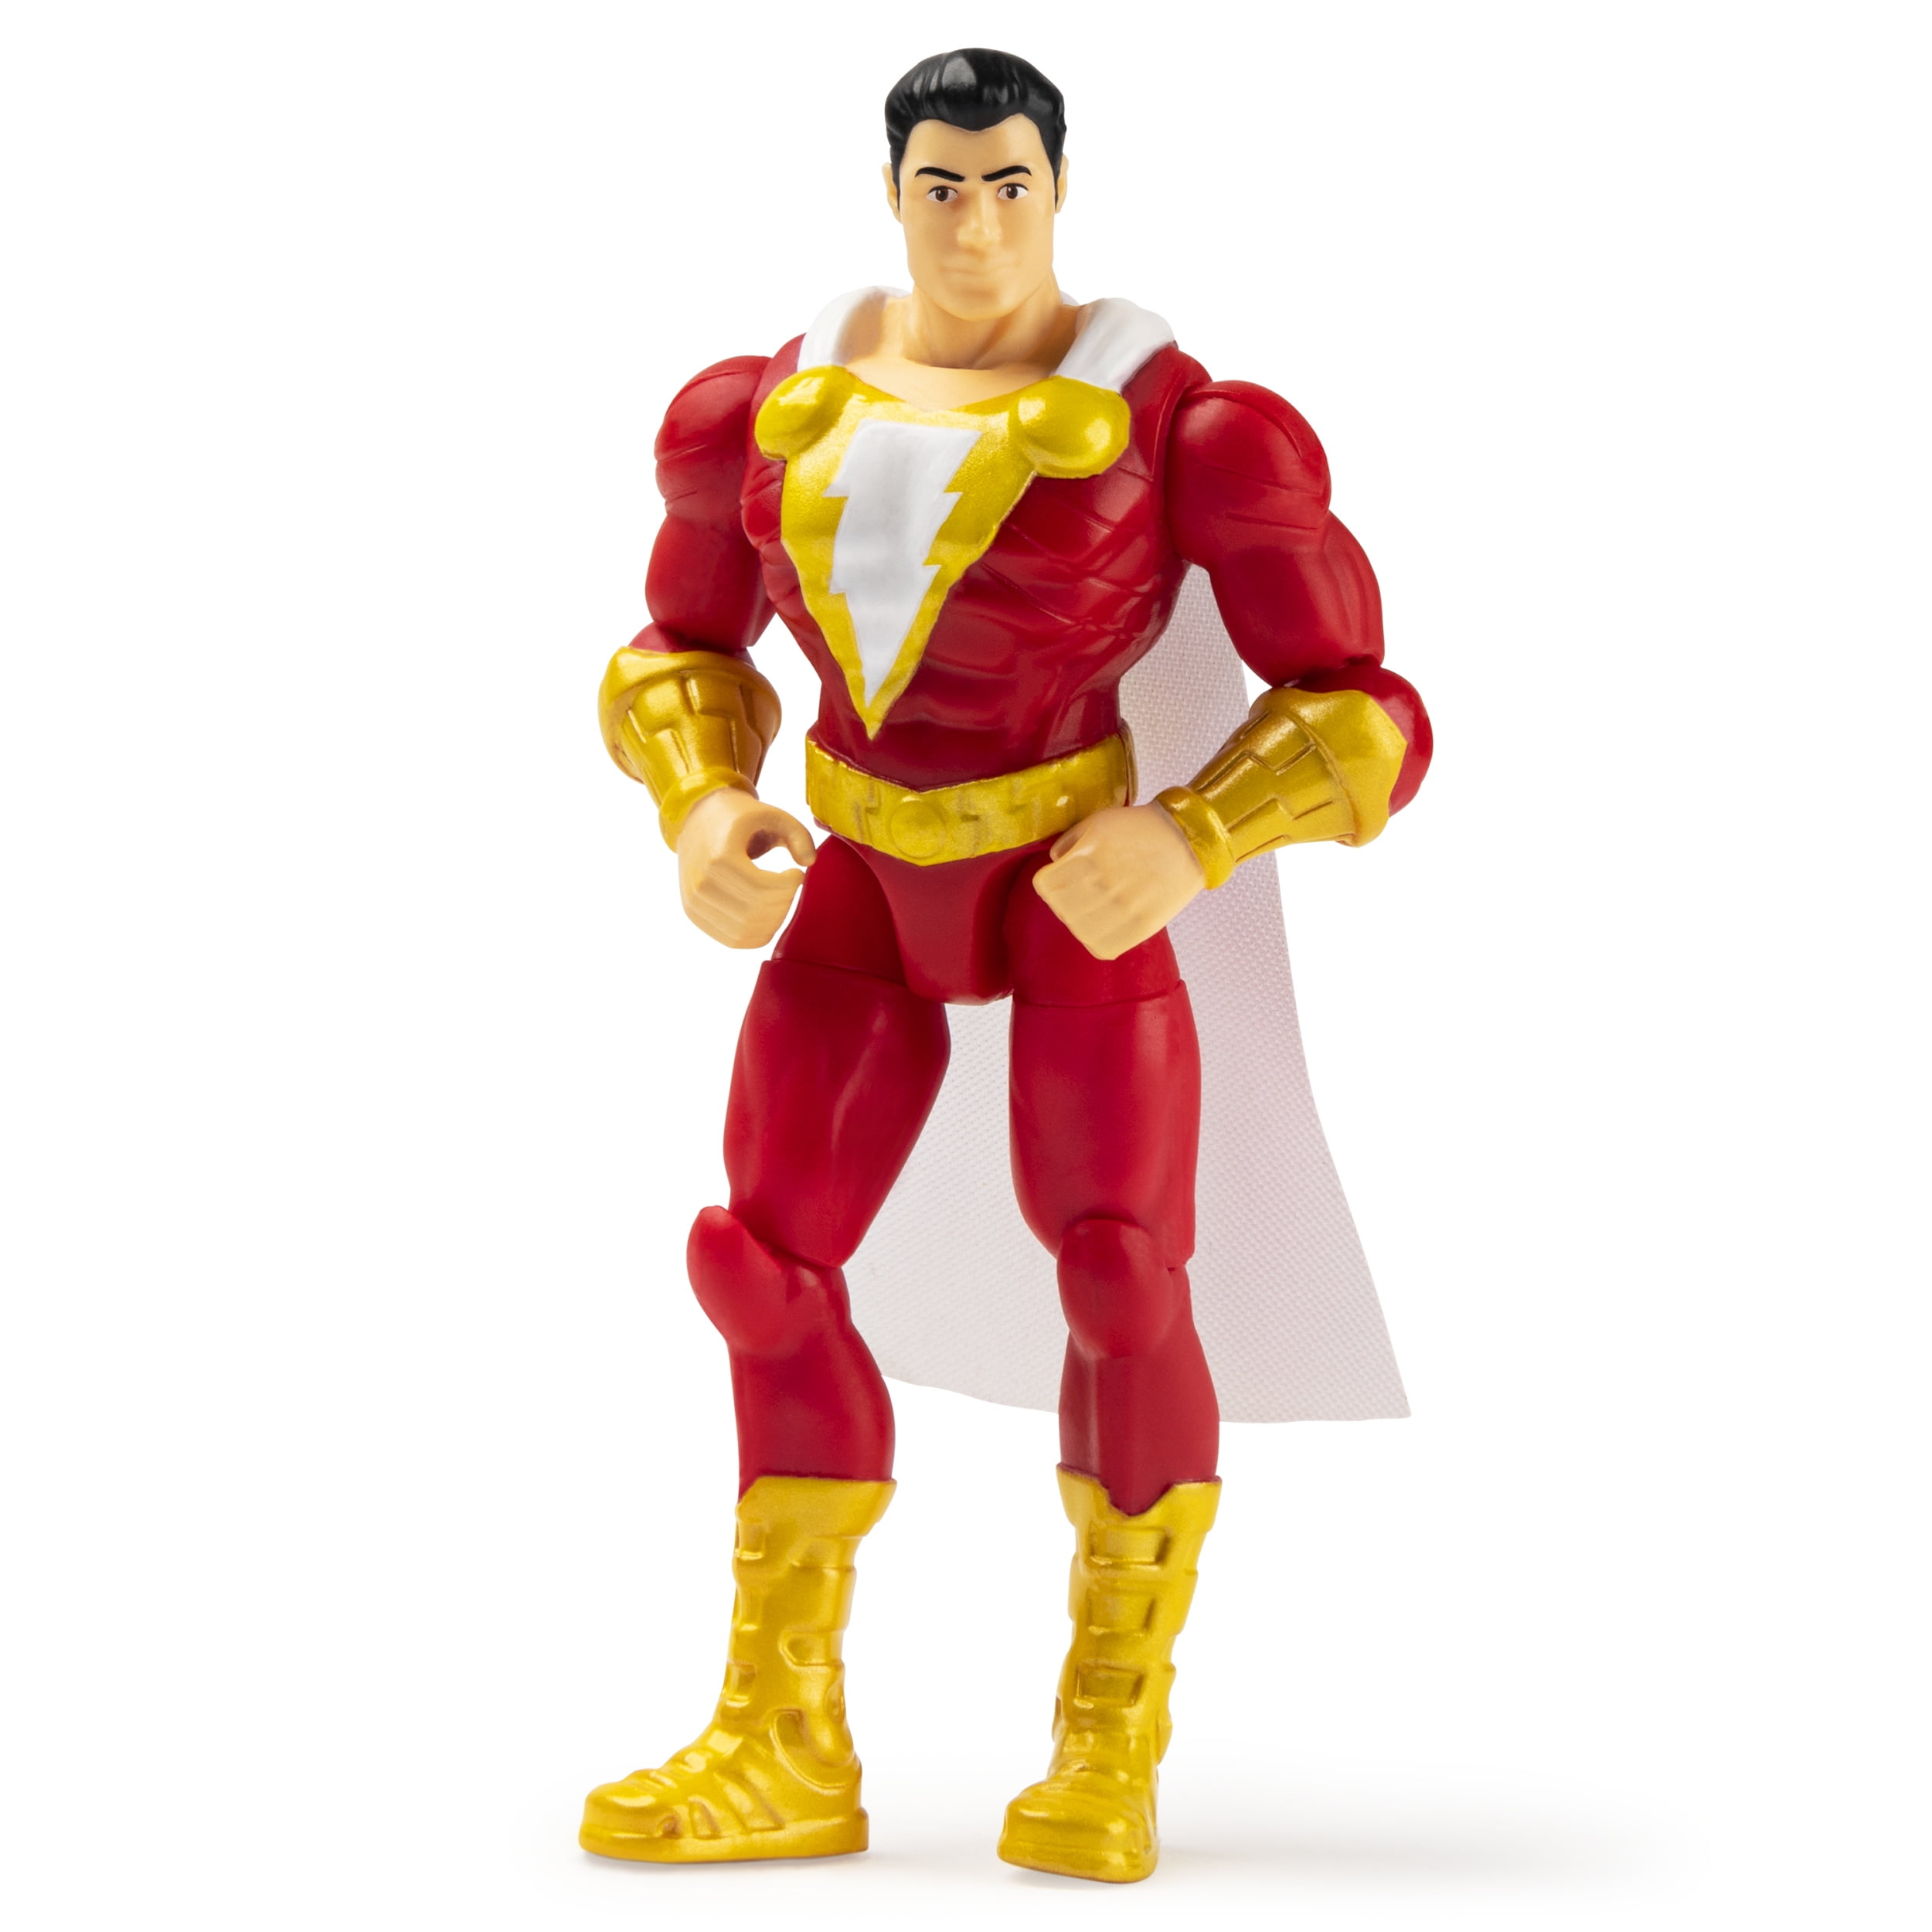 DC Comics Shazam Action Figure With Wrath Mattel 2018 Gcw41 FS for sale online